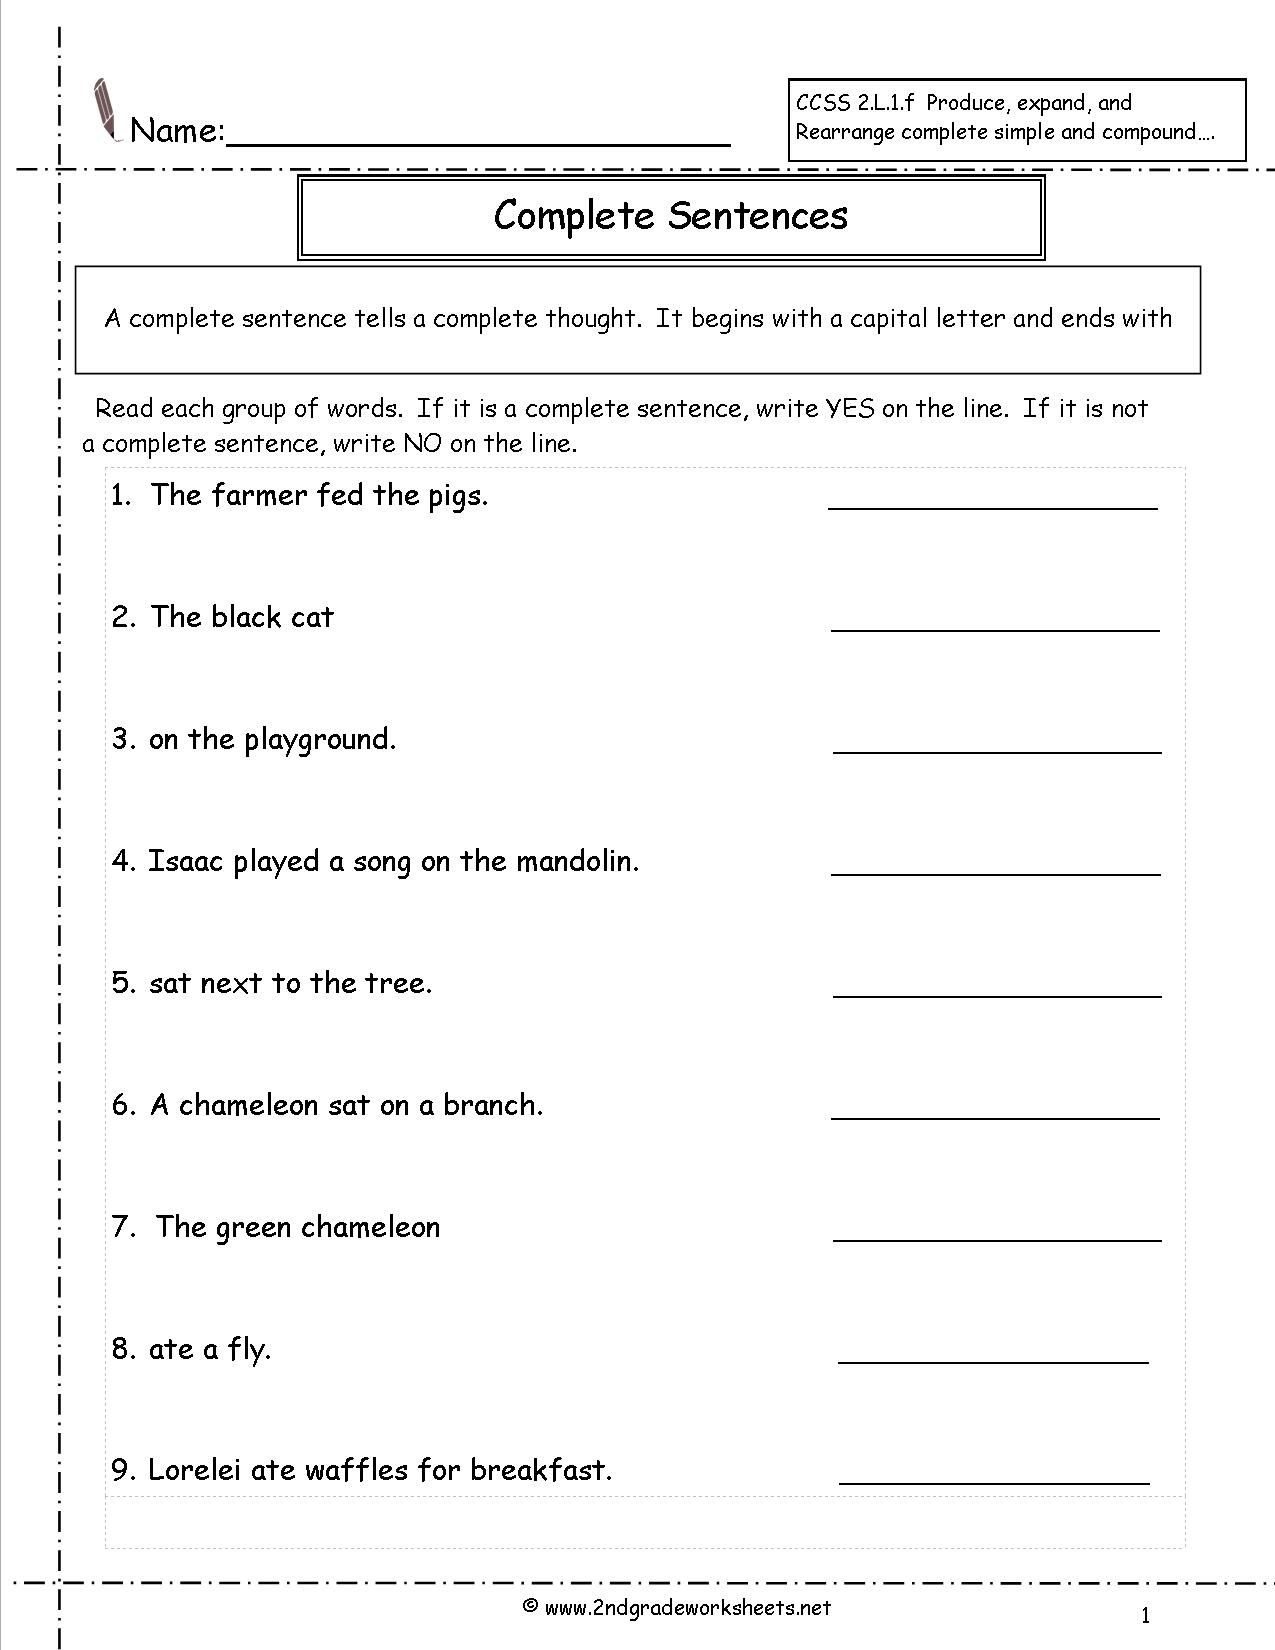 creating-compound-sentences-worksheets-99worksheets